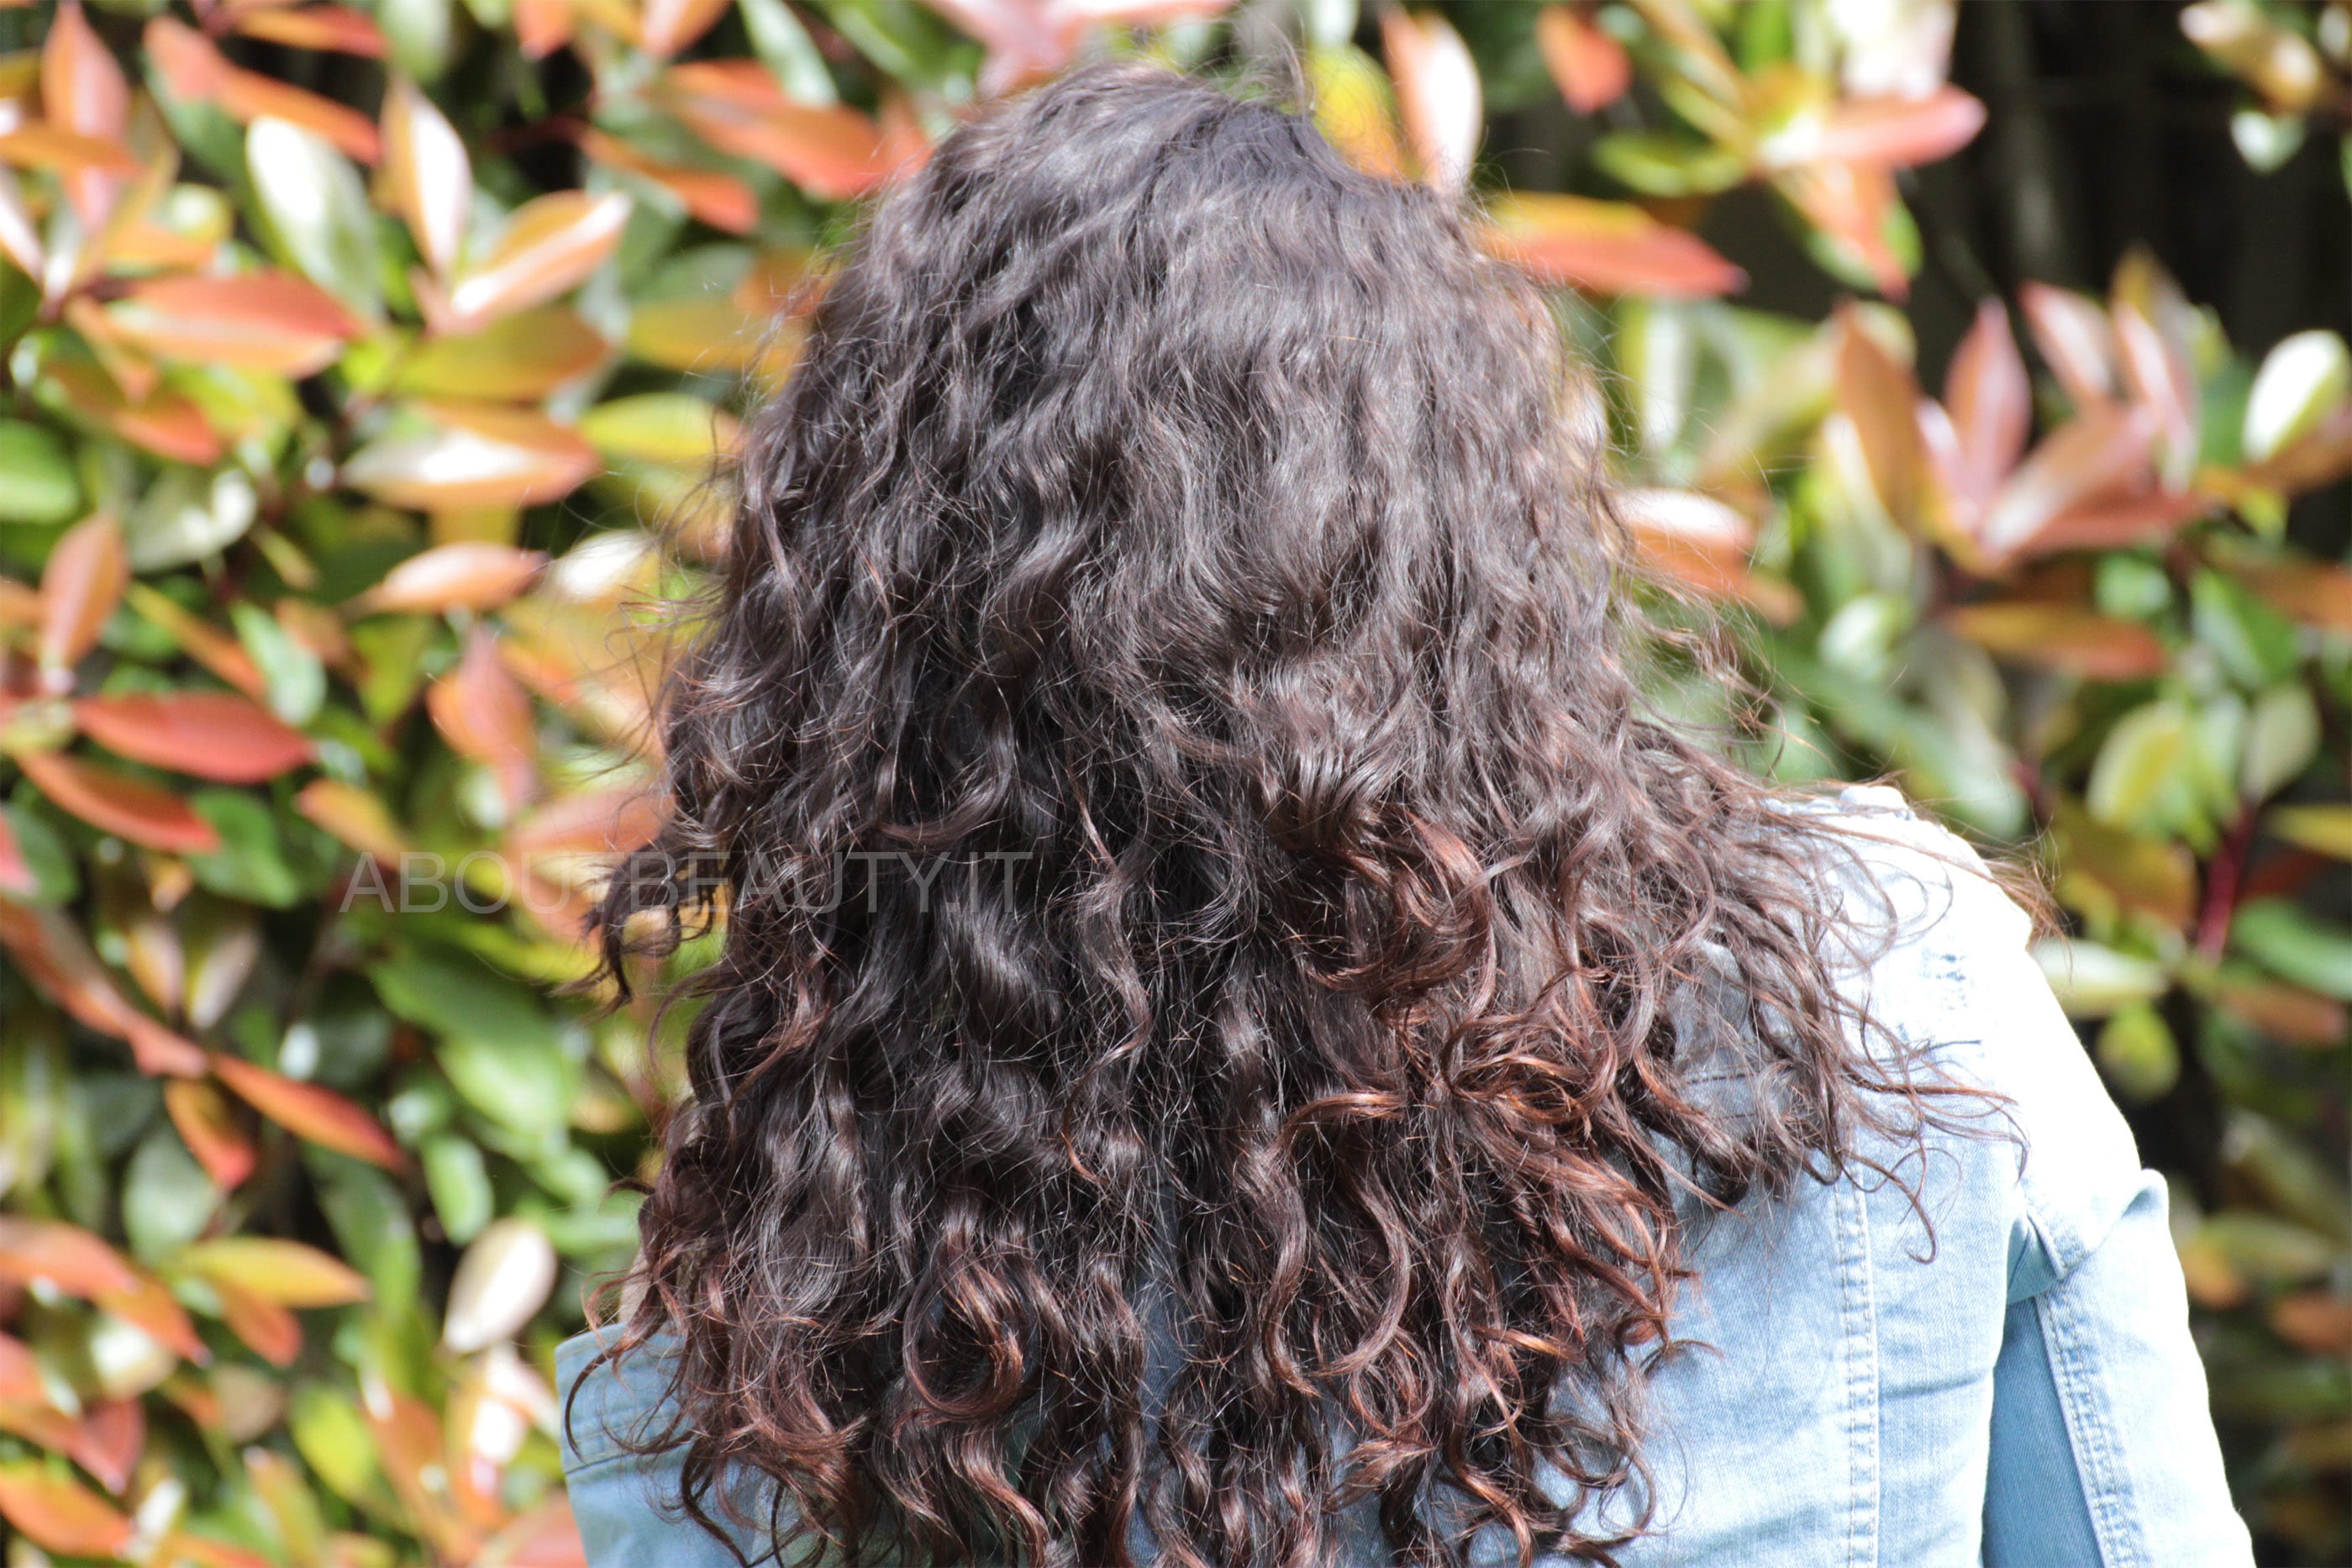 L'Oreal Botanicals Fresh Care, la linea al Cartamo per capelli secchi - Il risultato sui capelli